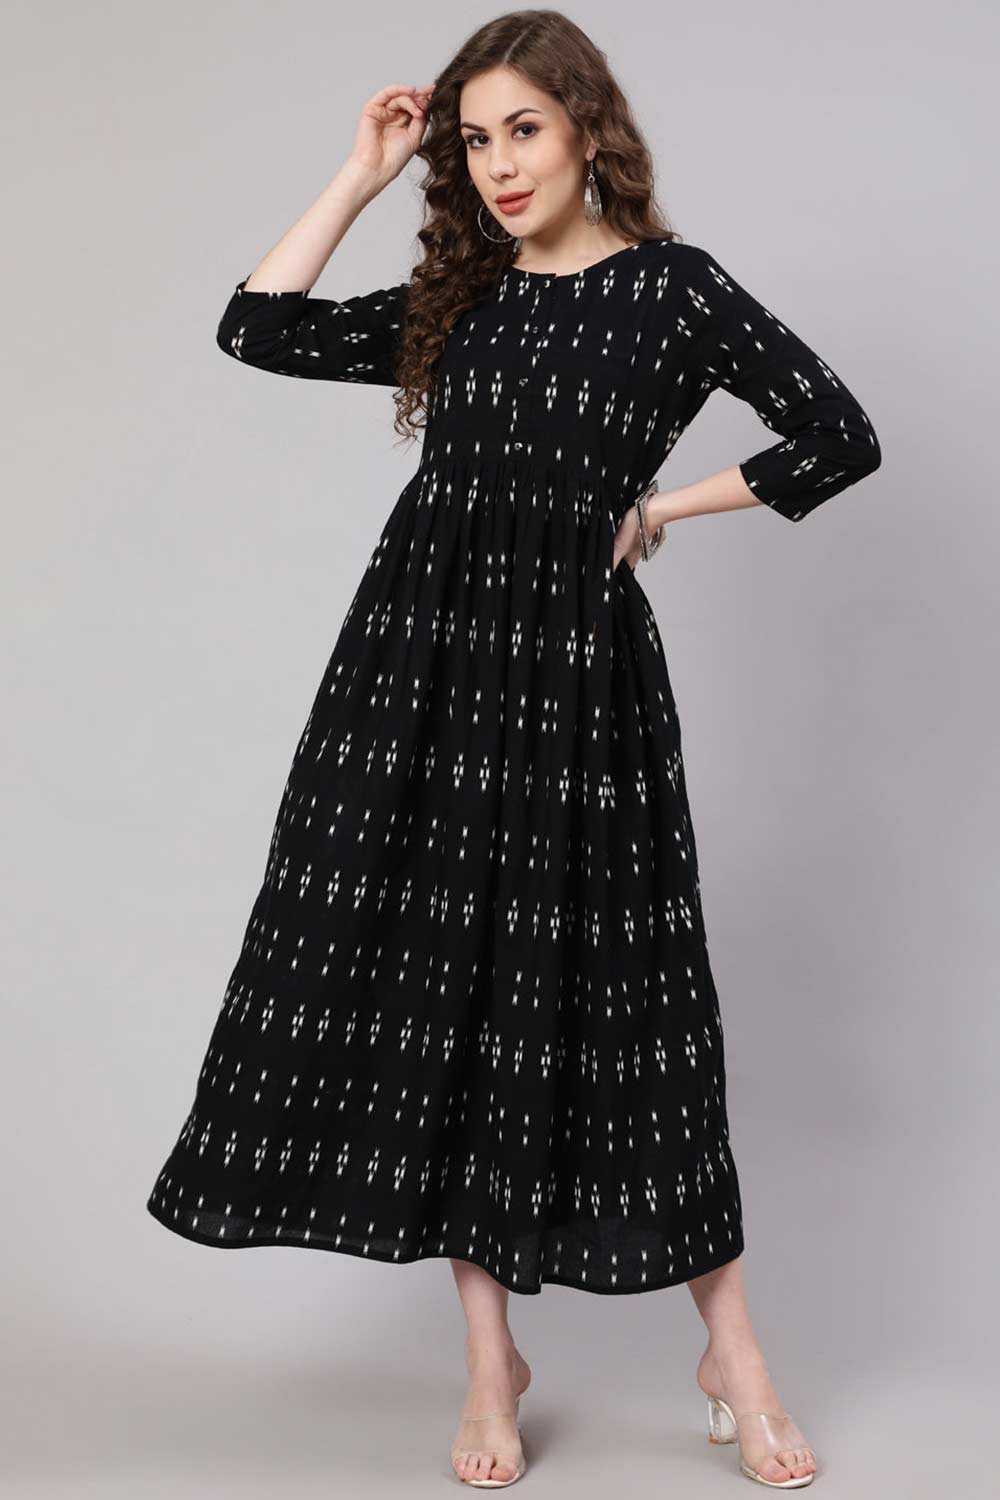 Buy Black Cotton Ikat Printed Flared Dress Online - Back